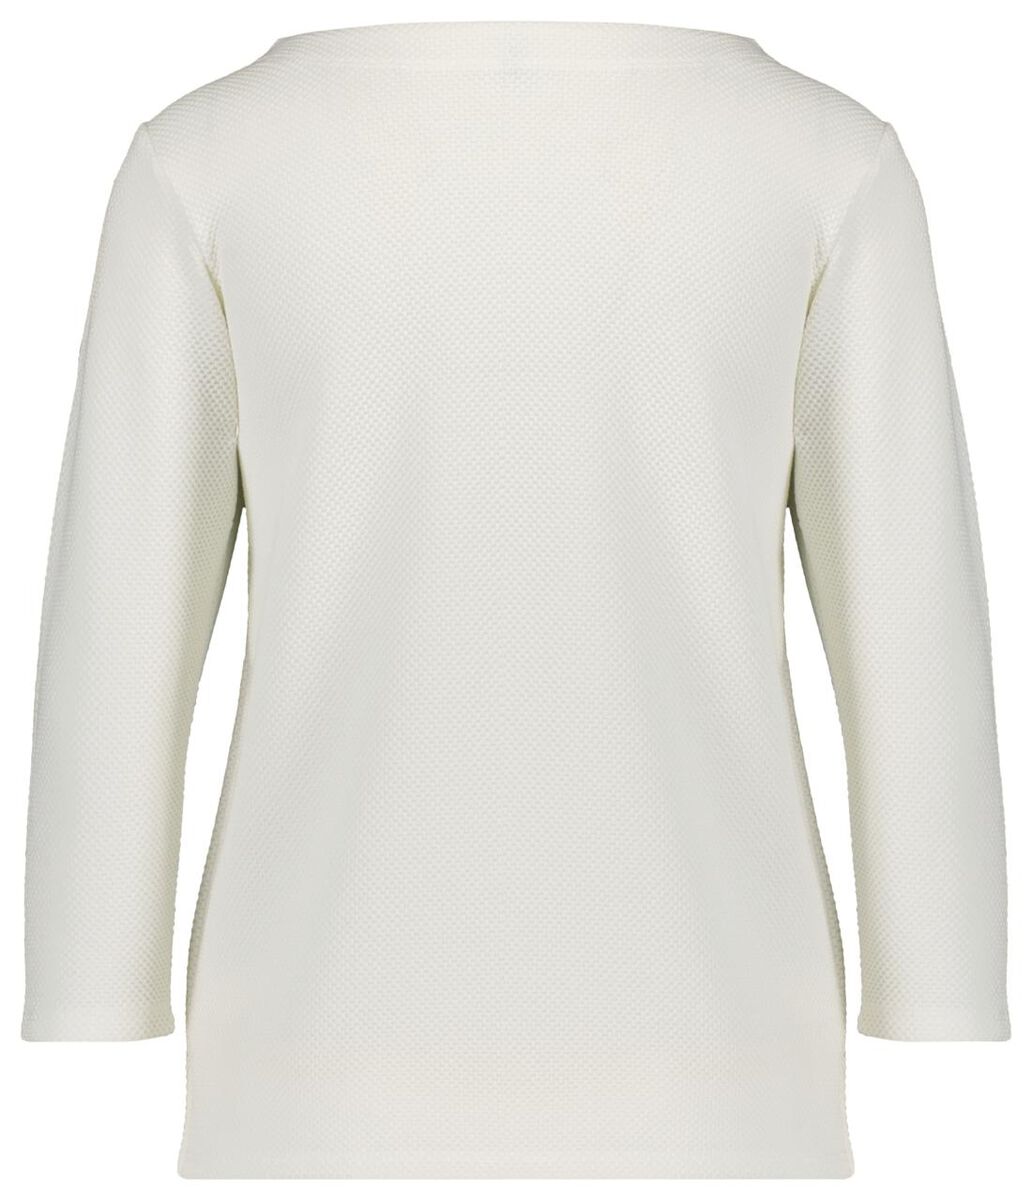 Damen-Shirt, Struktur eierschalenfarben eierschalenfarben - 1000021242 - HEMA